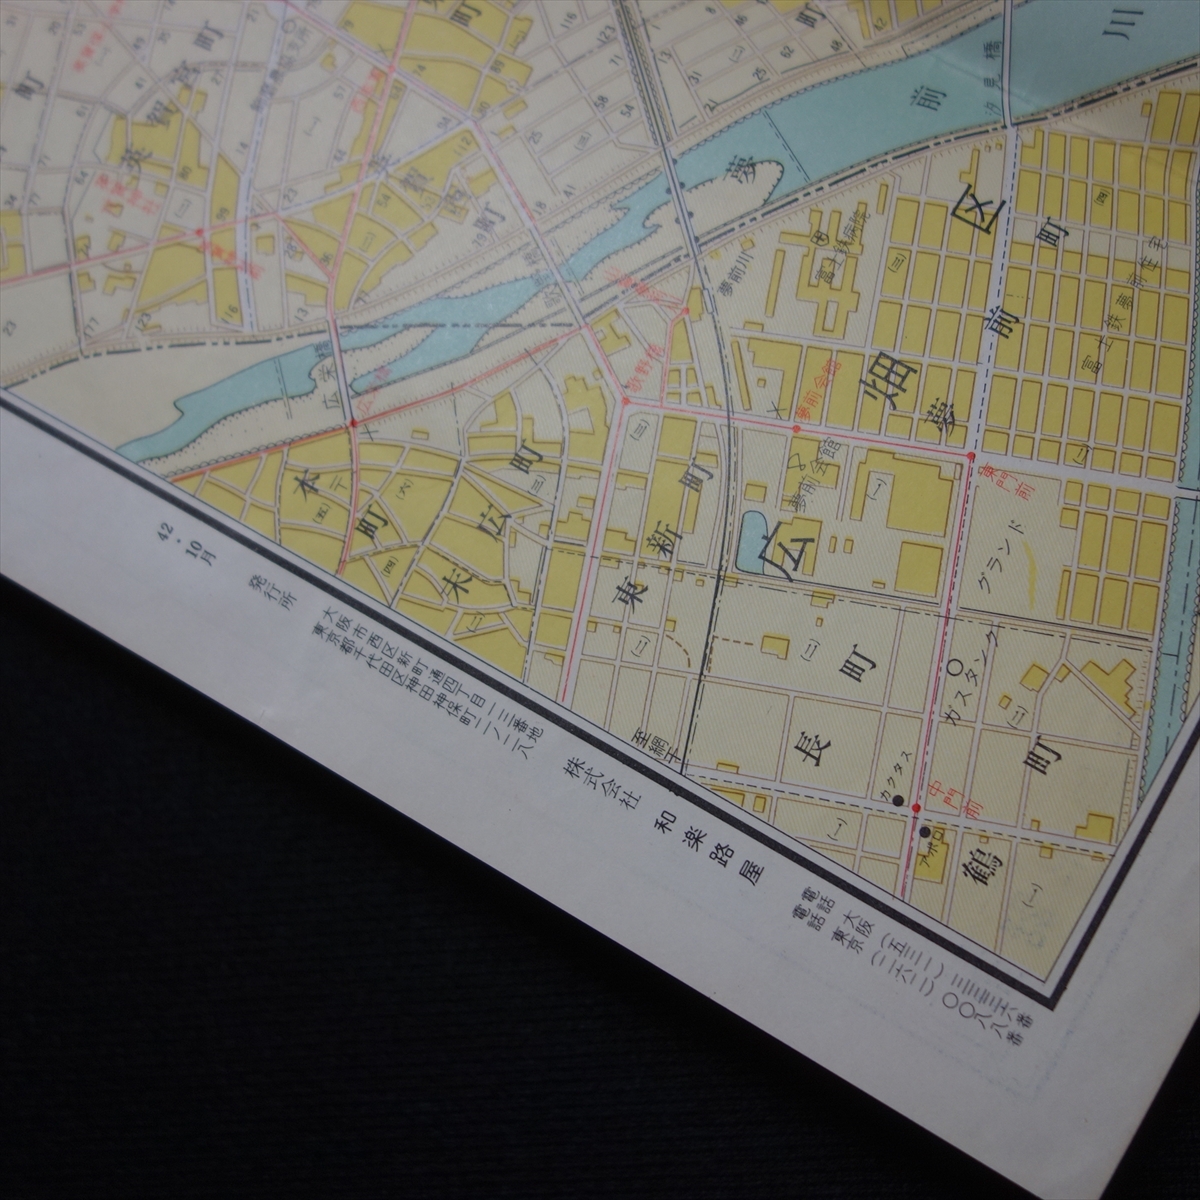 昭和42年 姫路市街図 バス路線・地番入り ワラヂヤ 和楽路屋 / 姫路 姫路市 地図 昭和の画像8